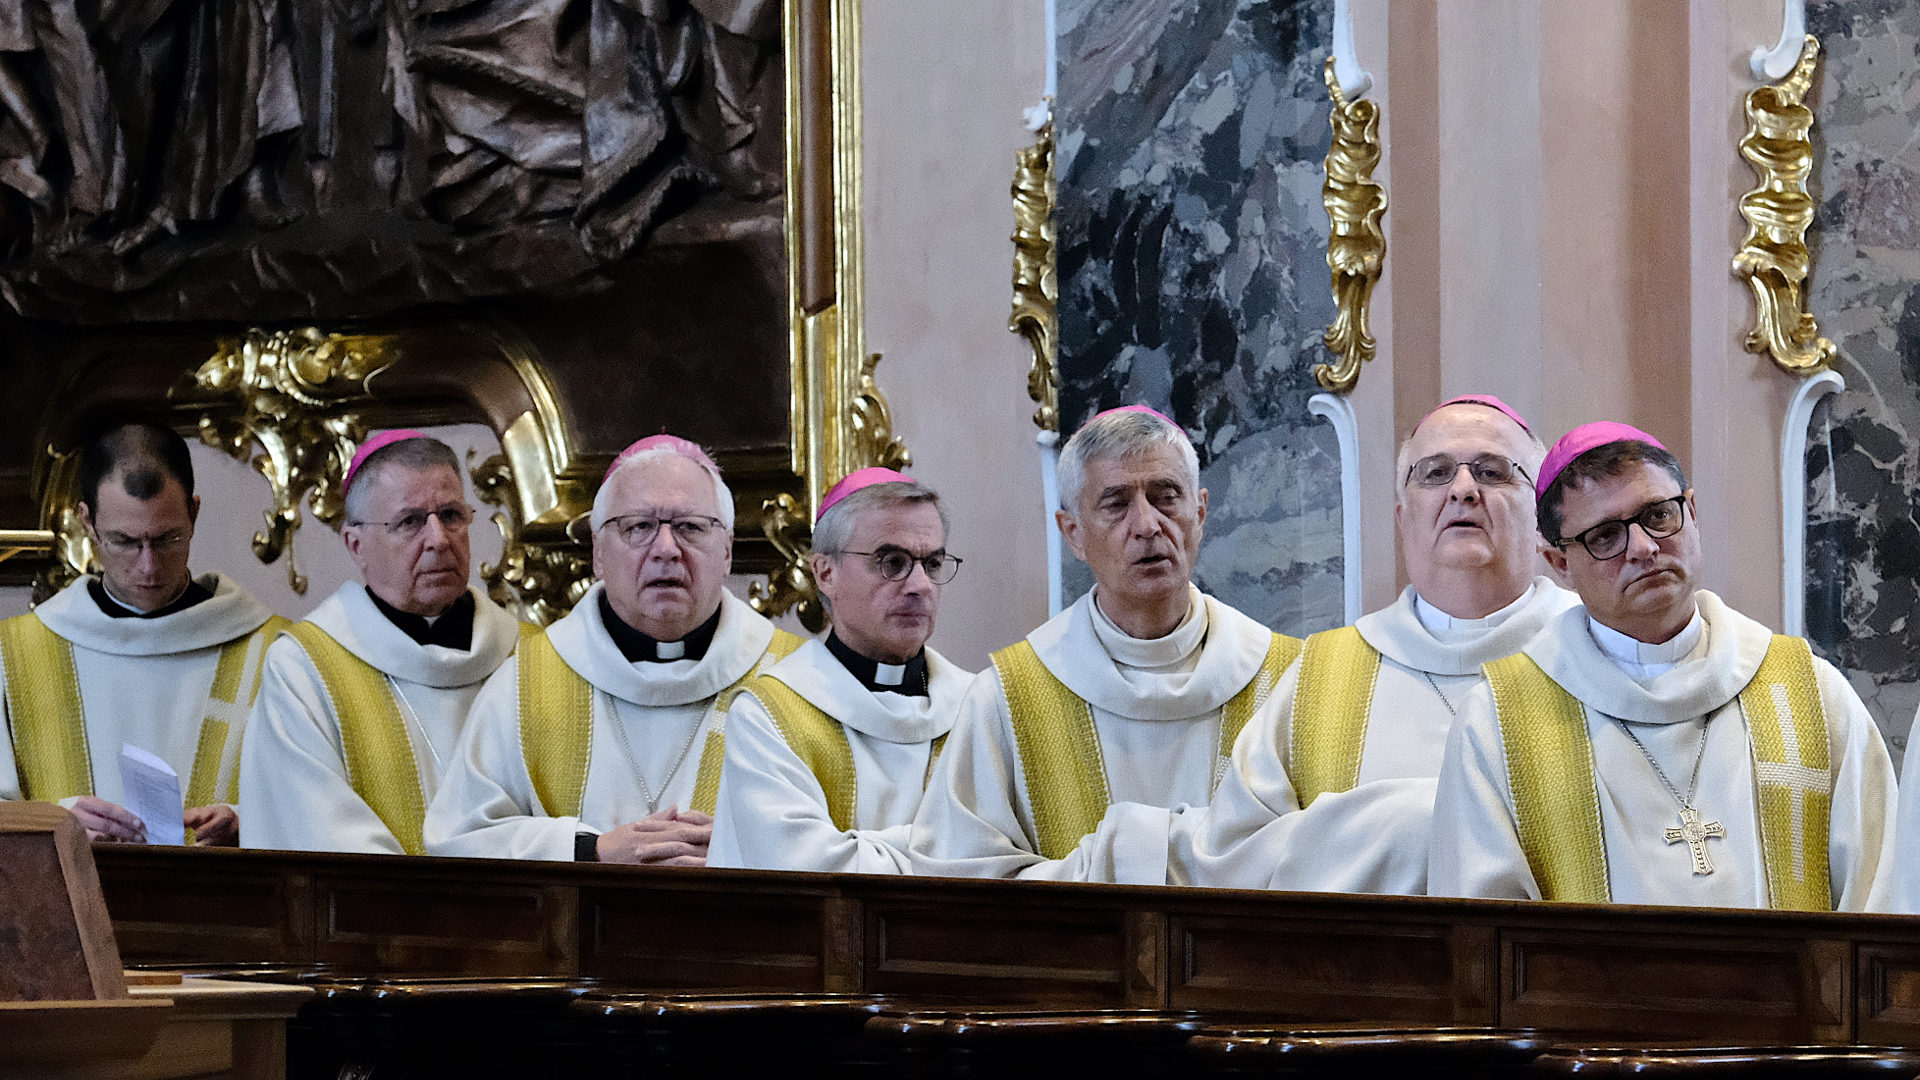 Einige Mitglieder der Schweizer Bischofskonferenz bei einem Gottesdienst in Einsiedeln, 2019